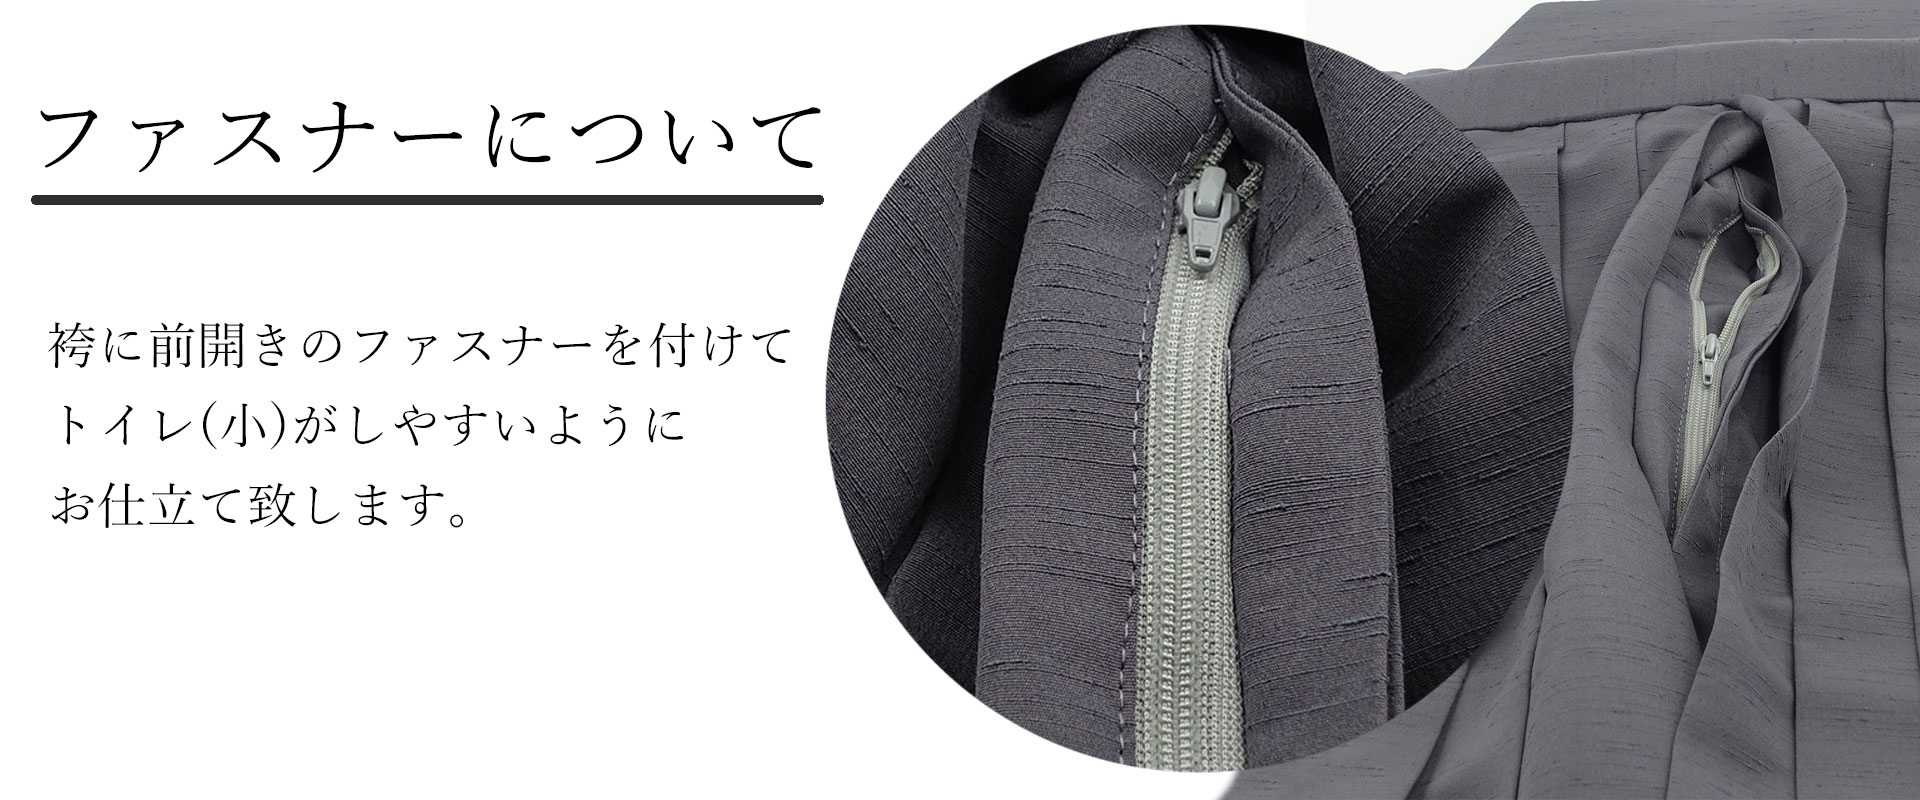 正絹袴 米沢織物 仕立てオーダー 縞 | 男着物の加藤商店《公式》|男性